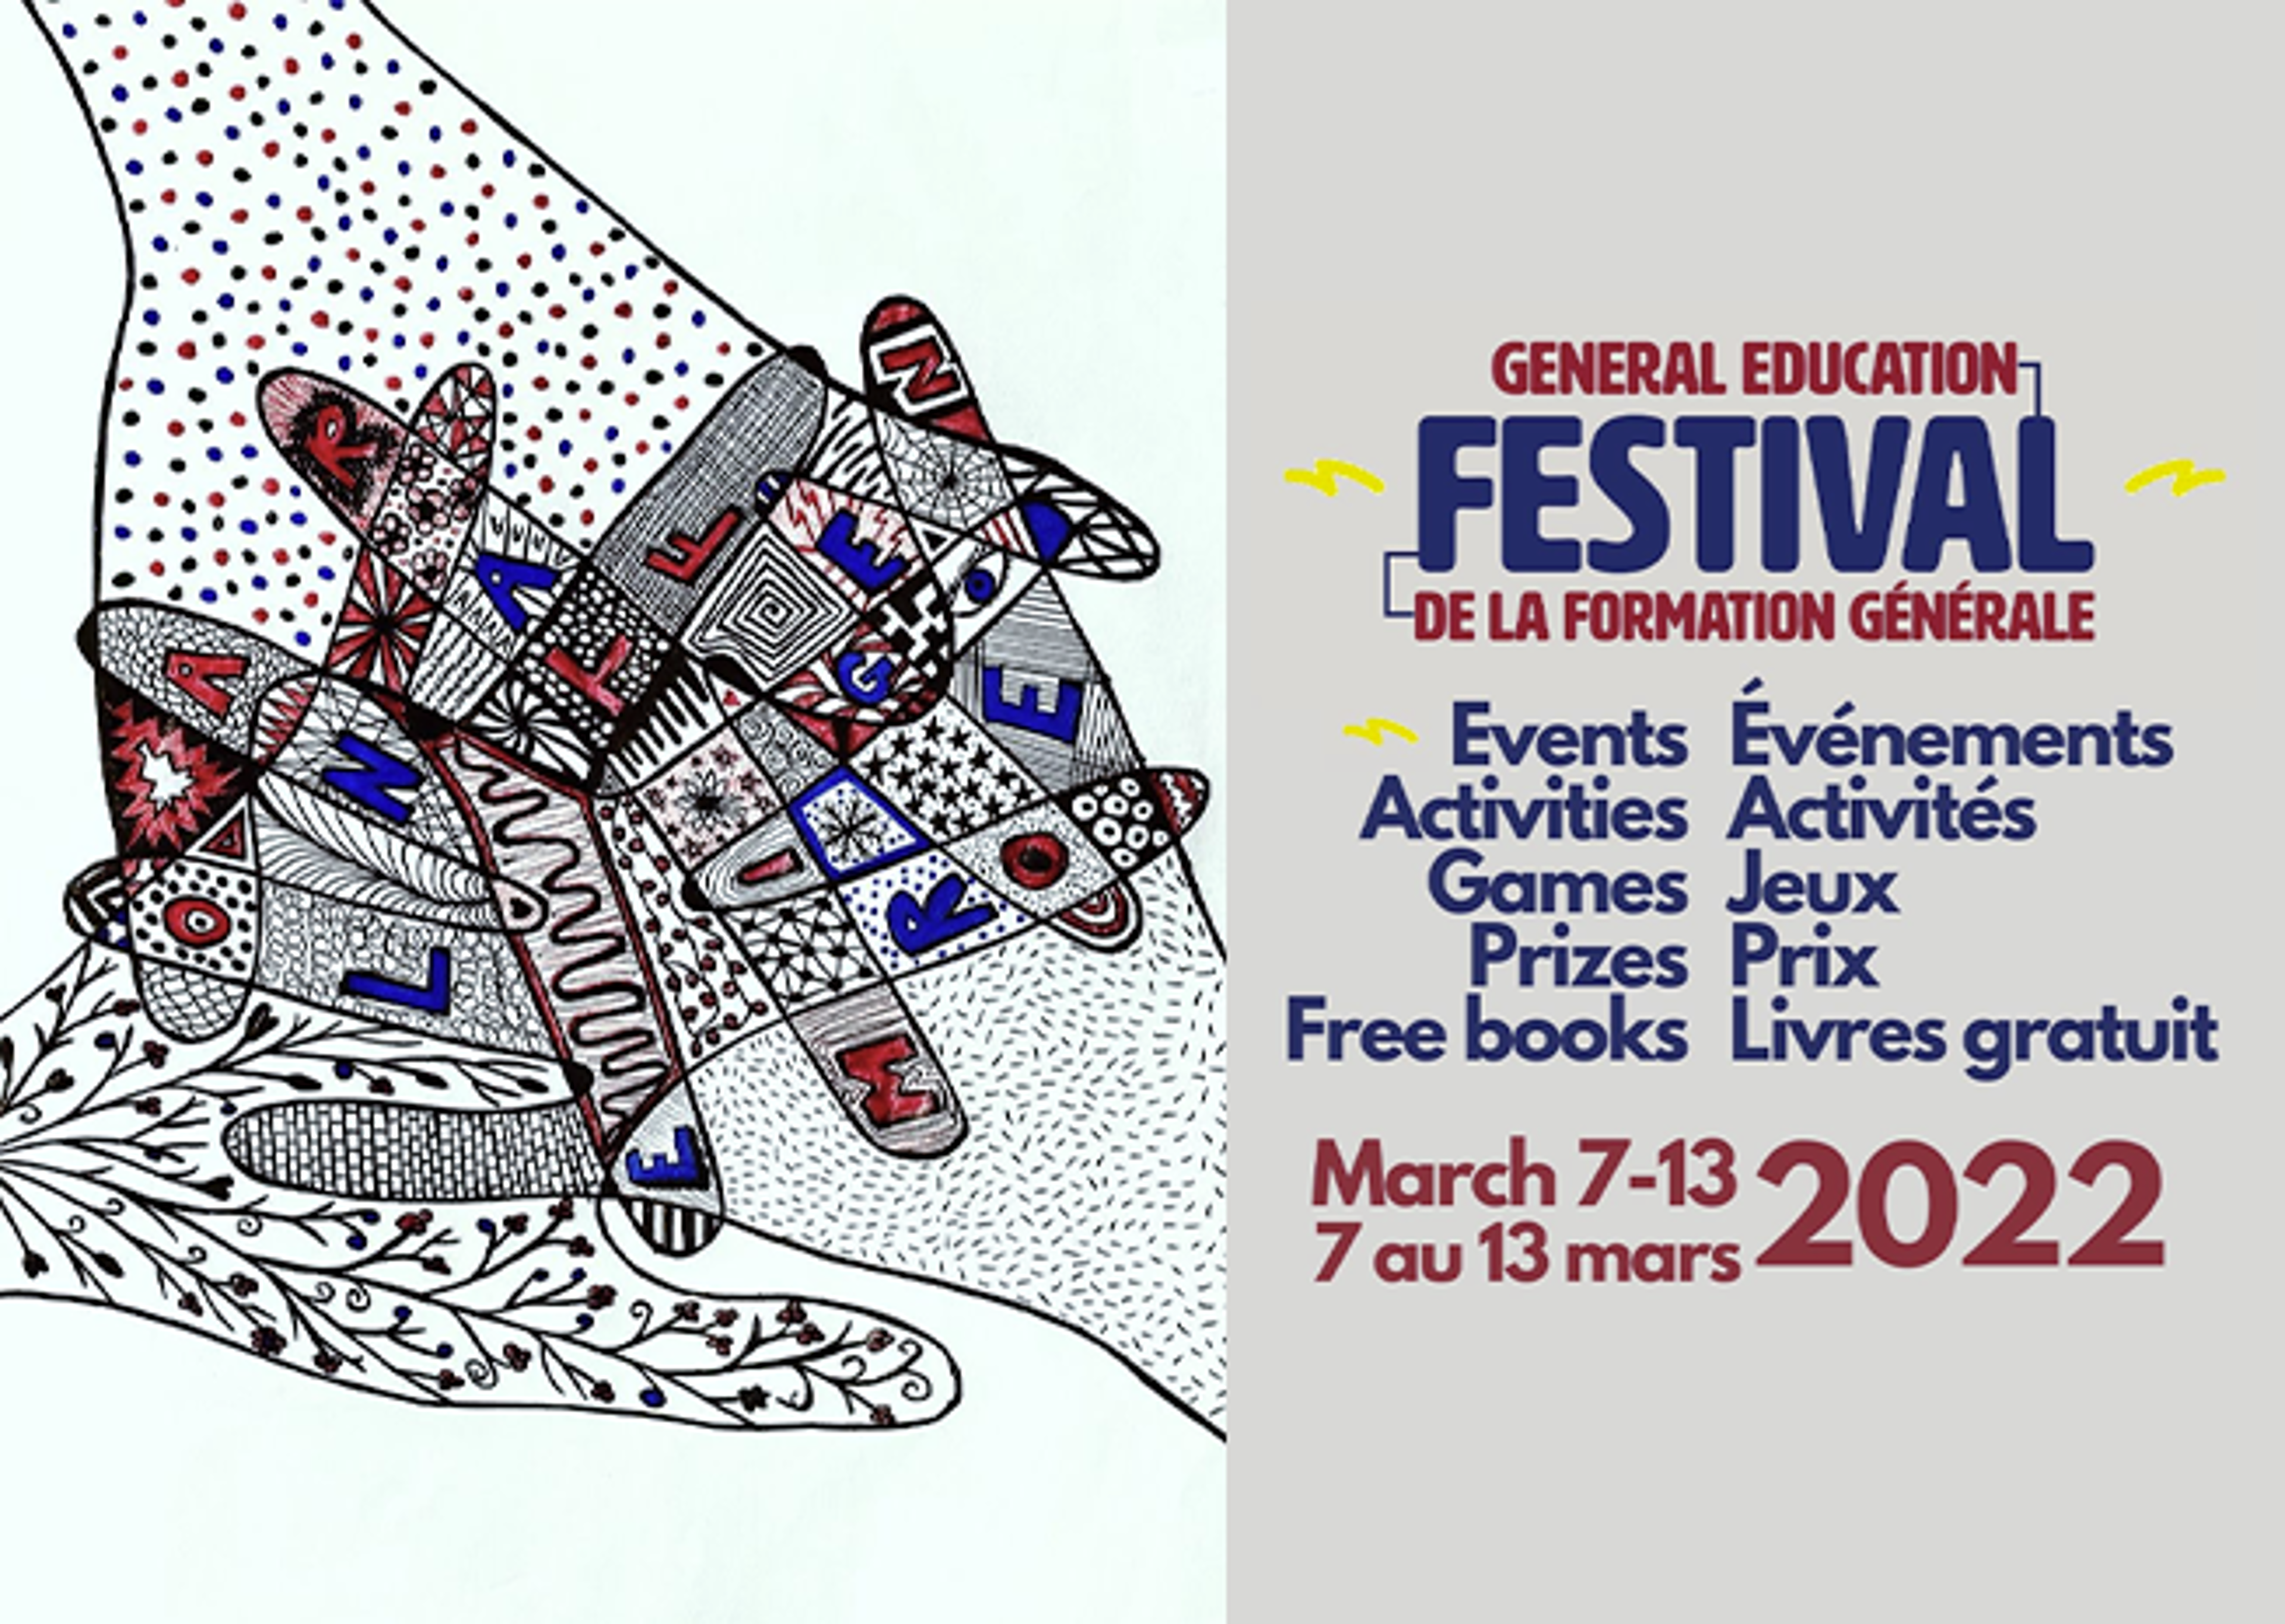 Une affiche promotionnelle pour un festival de formation générale avec une sneaker stylisée aux motifs complexes, énumérant événements, activités, jeux, prix et livres gratuits du 7 au 13 mars 2022.